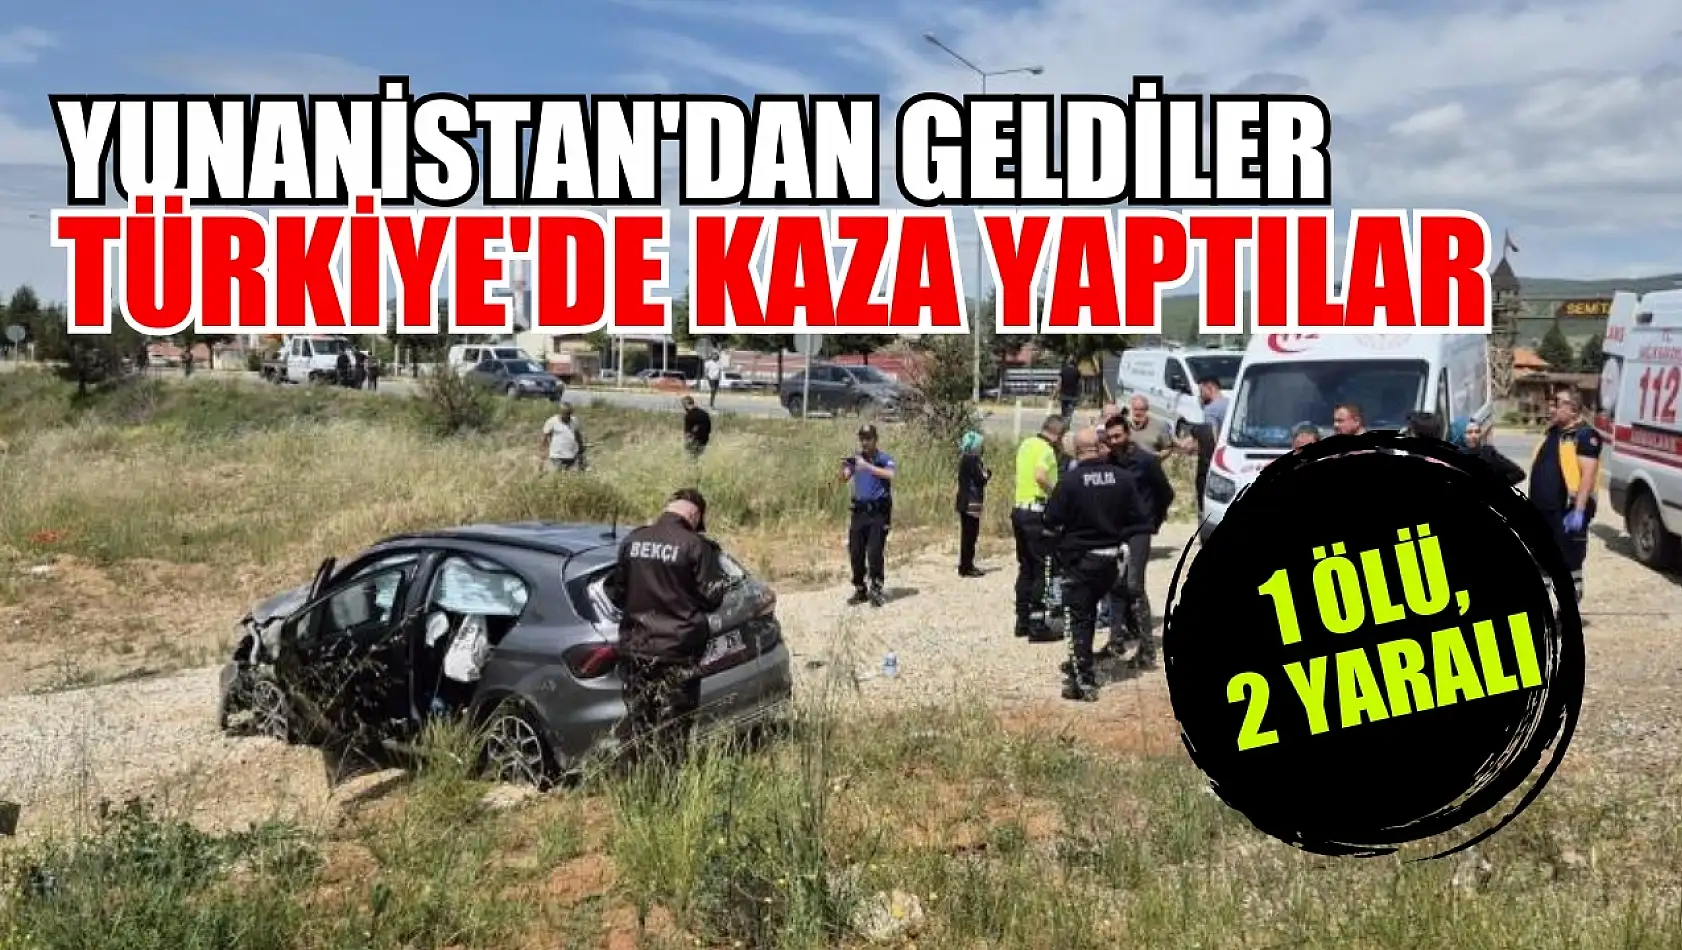 Yunanistan'dan geldiler Türkiye'de kaza yaptılar 1 ölü, 2 yaralı